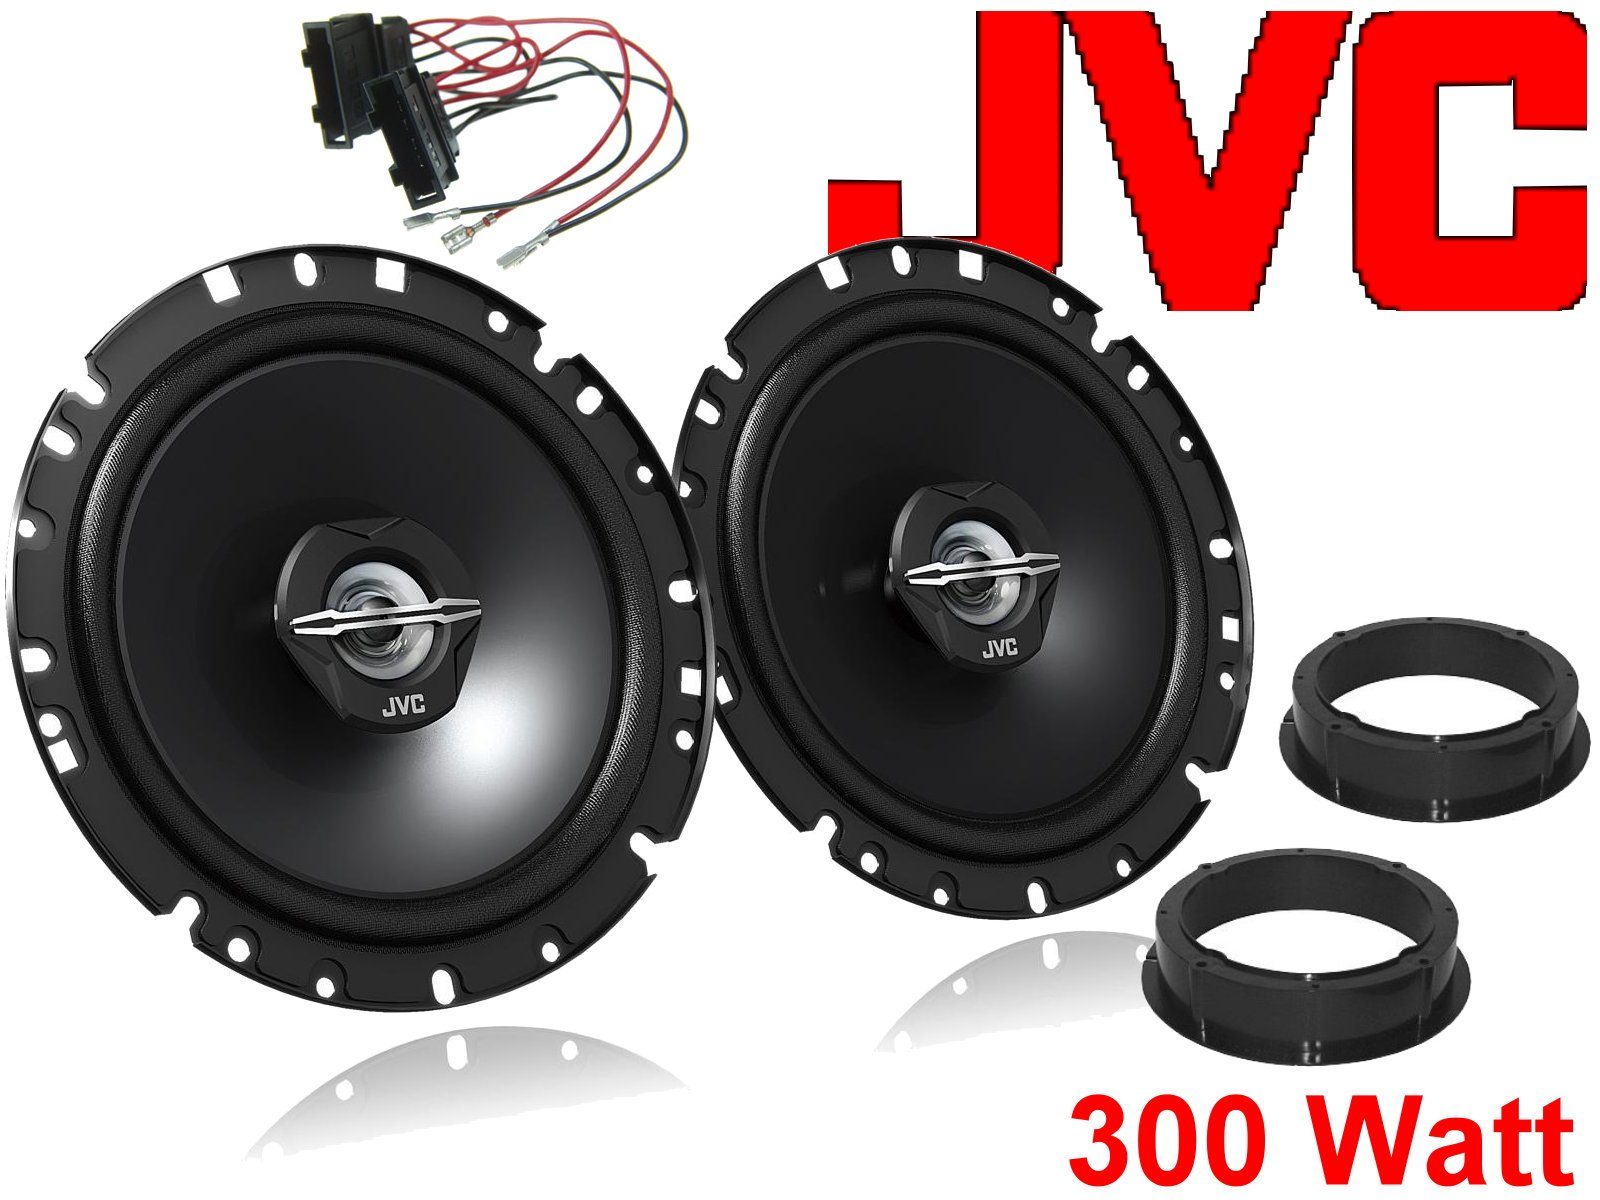 Auto-Lautsprecher Lautsprecher Seat Bj (30 0 W) für passend Set Altea DSX JVC